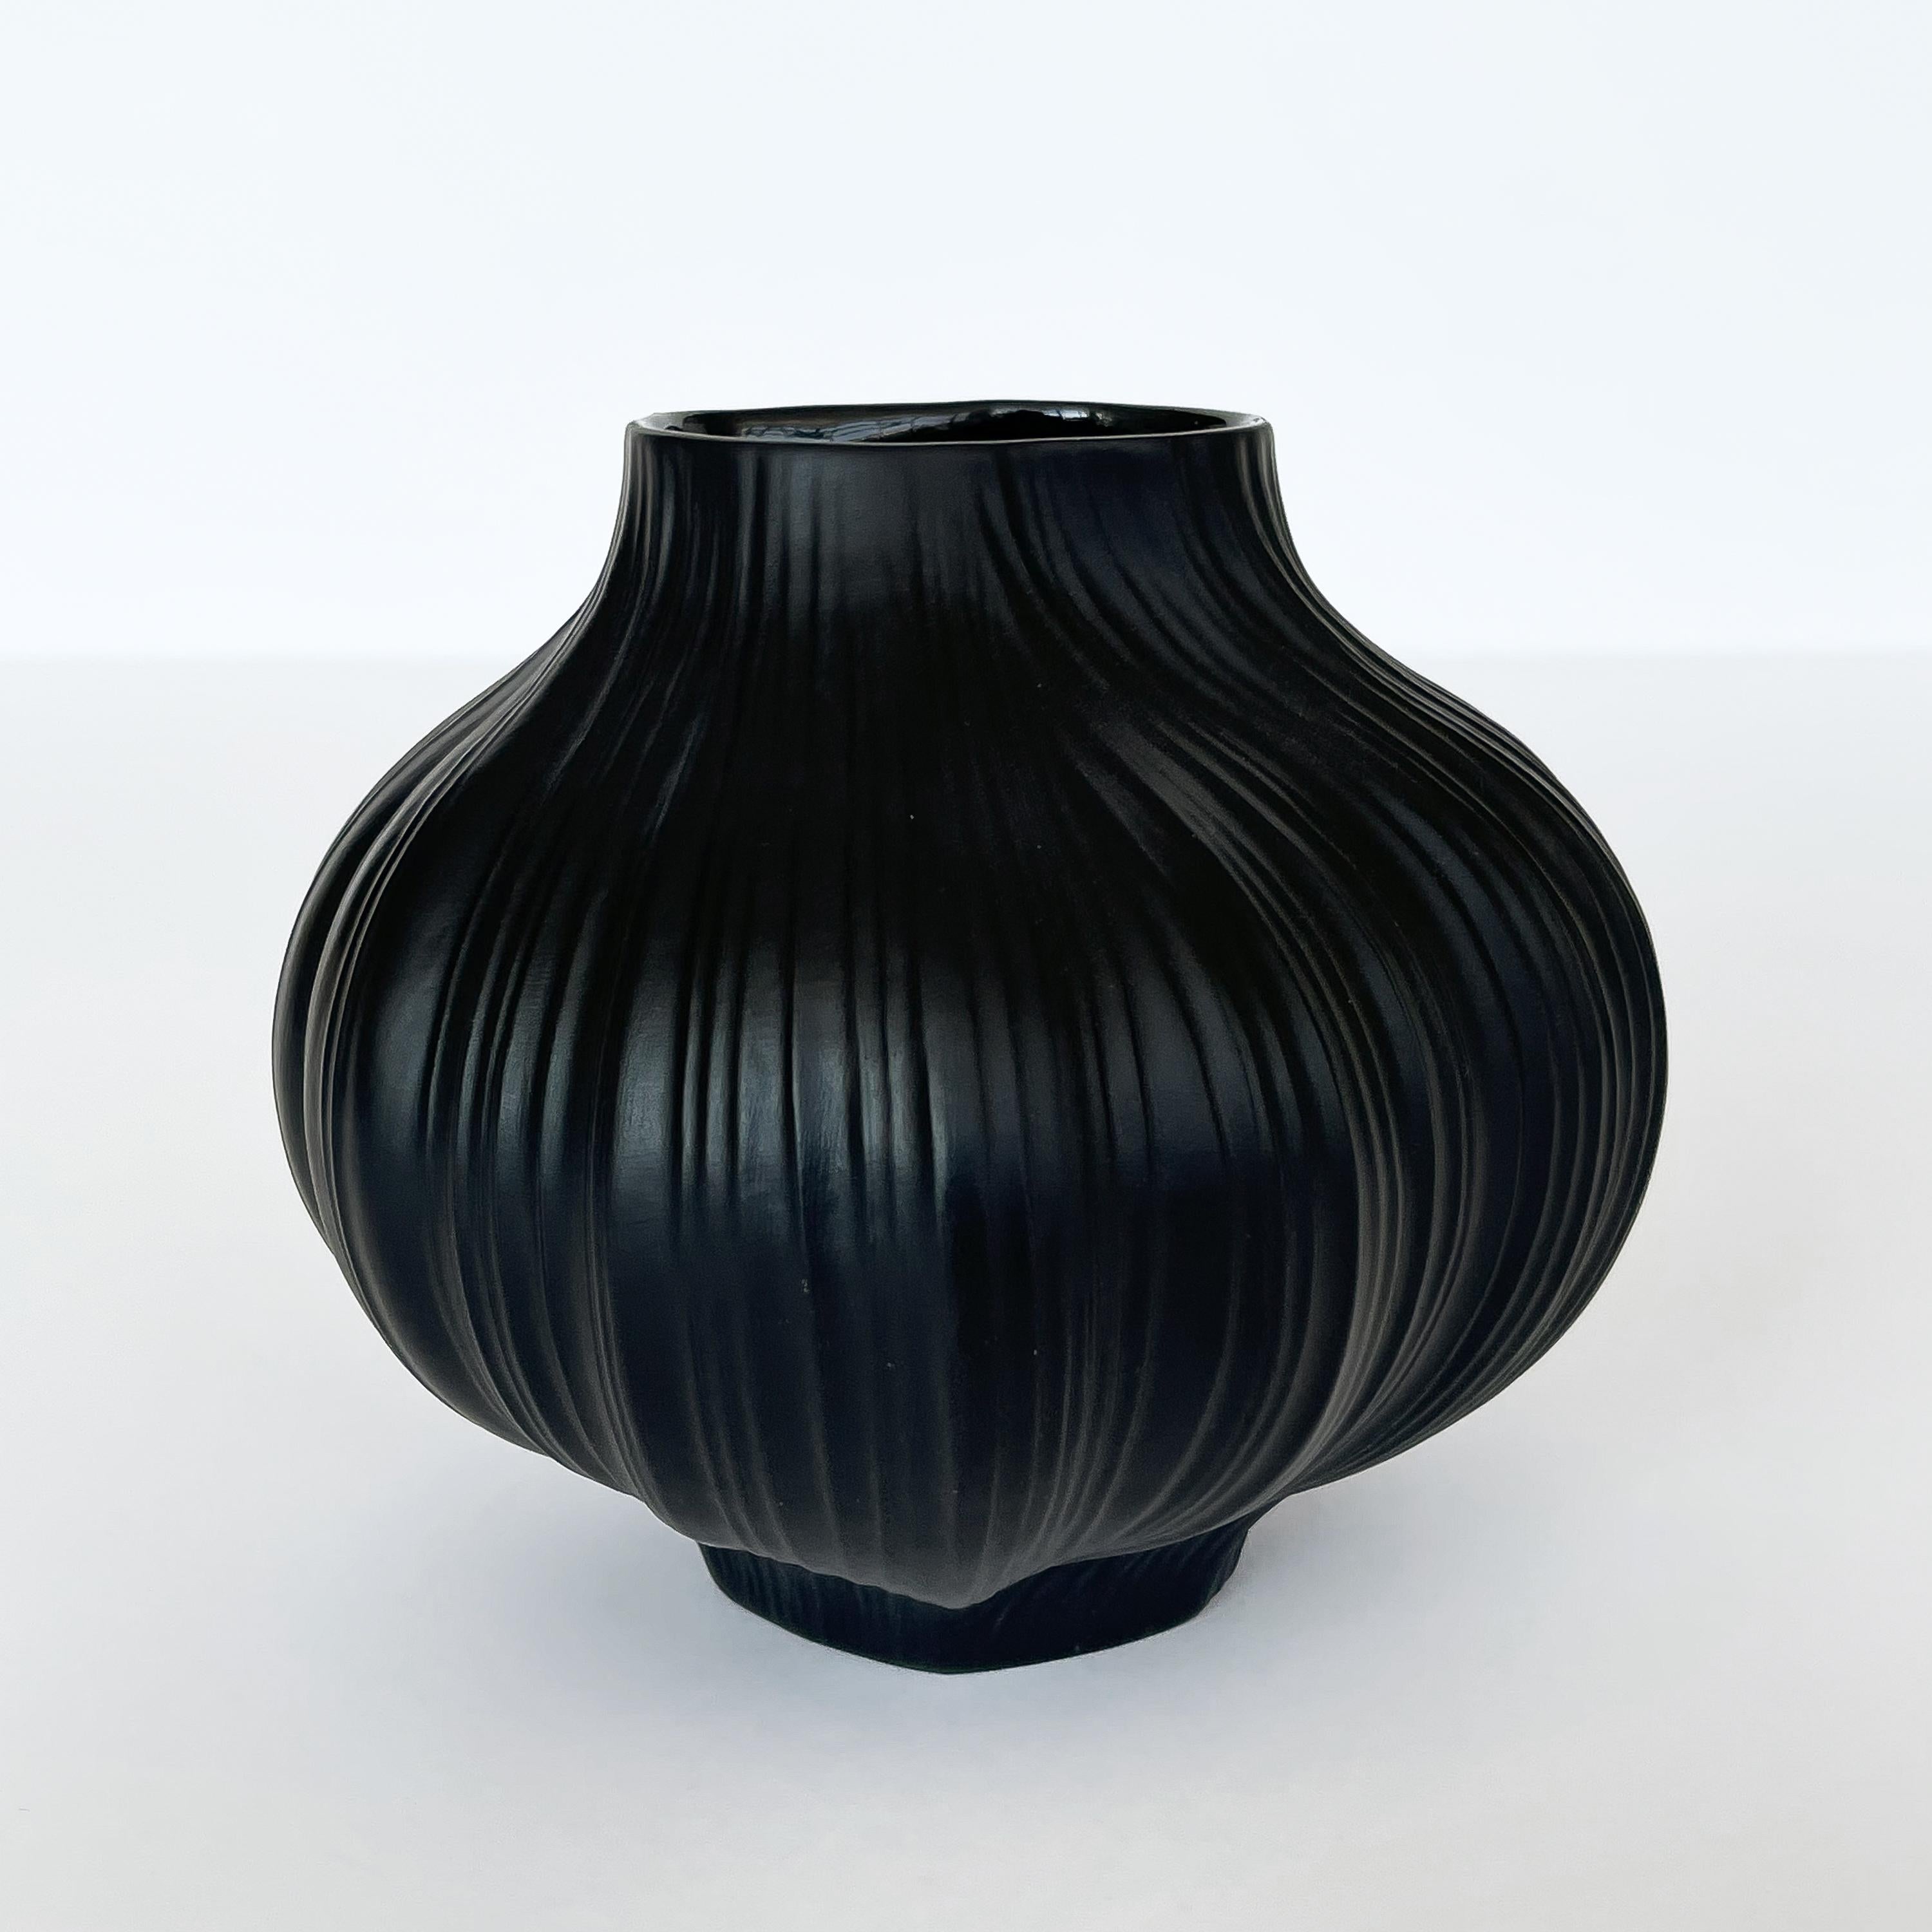 Unglazed matte black porcelain Plissée vase designed Martin Freyer for Rosenthal Studio Line, Germany 1960s. Black unglazed porcelain with pleated / draped form. Signed underneath: Rosenthal Studio Line, Martin Freyer, Germany. The base and interior